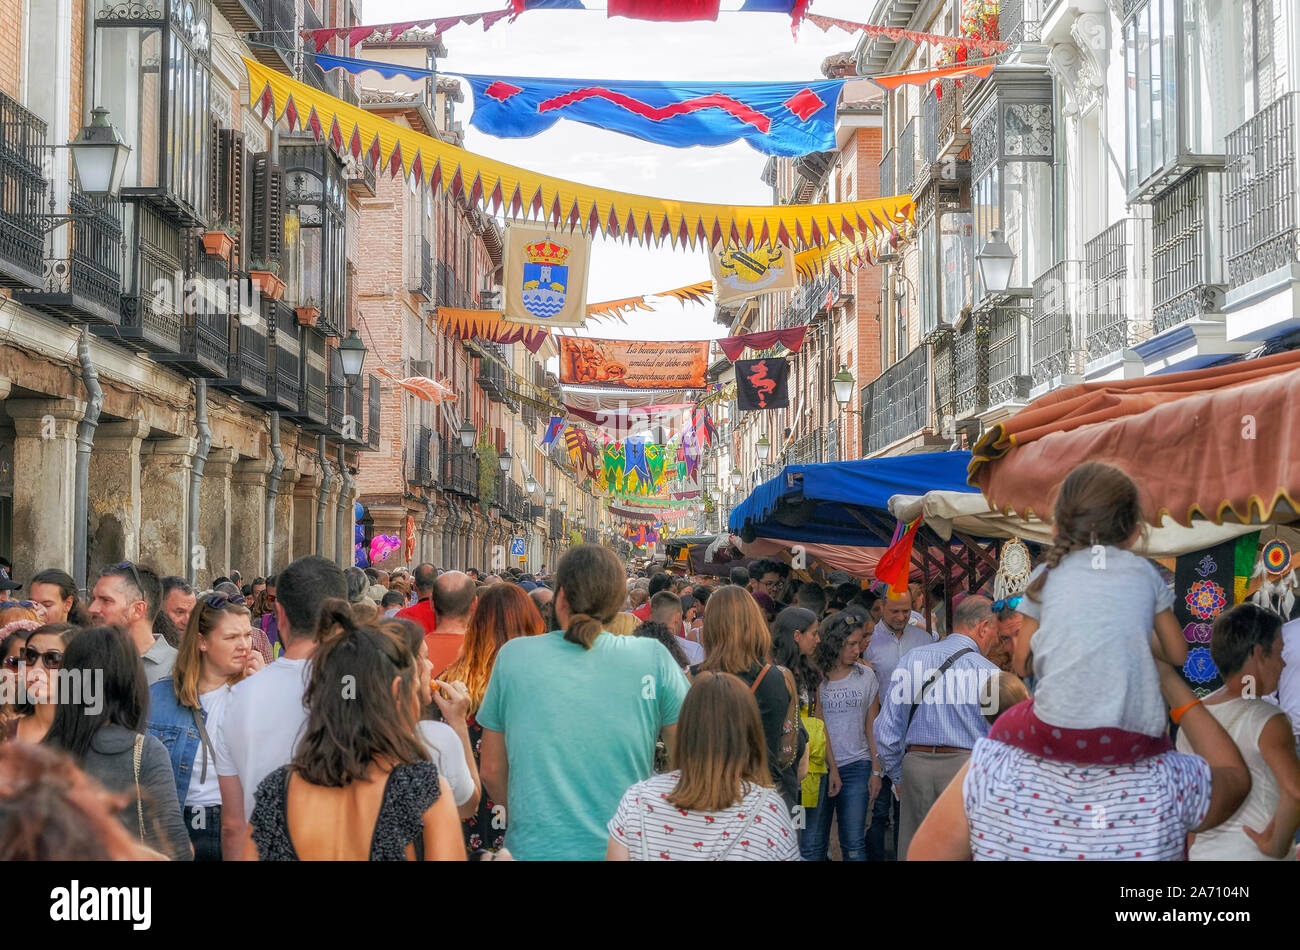 Les personnes à la rue Mayor, au cours de la semaine du marché de rue médiévale cervantino, à Alcala de Henares (Madrid - Espagne), le 12 octobre 2019. Banque D'Images